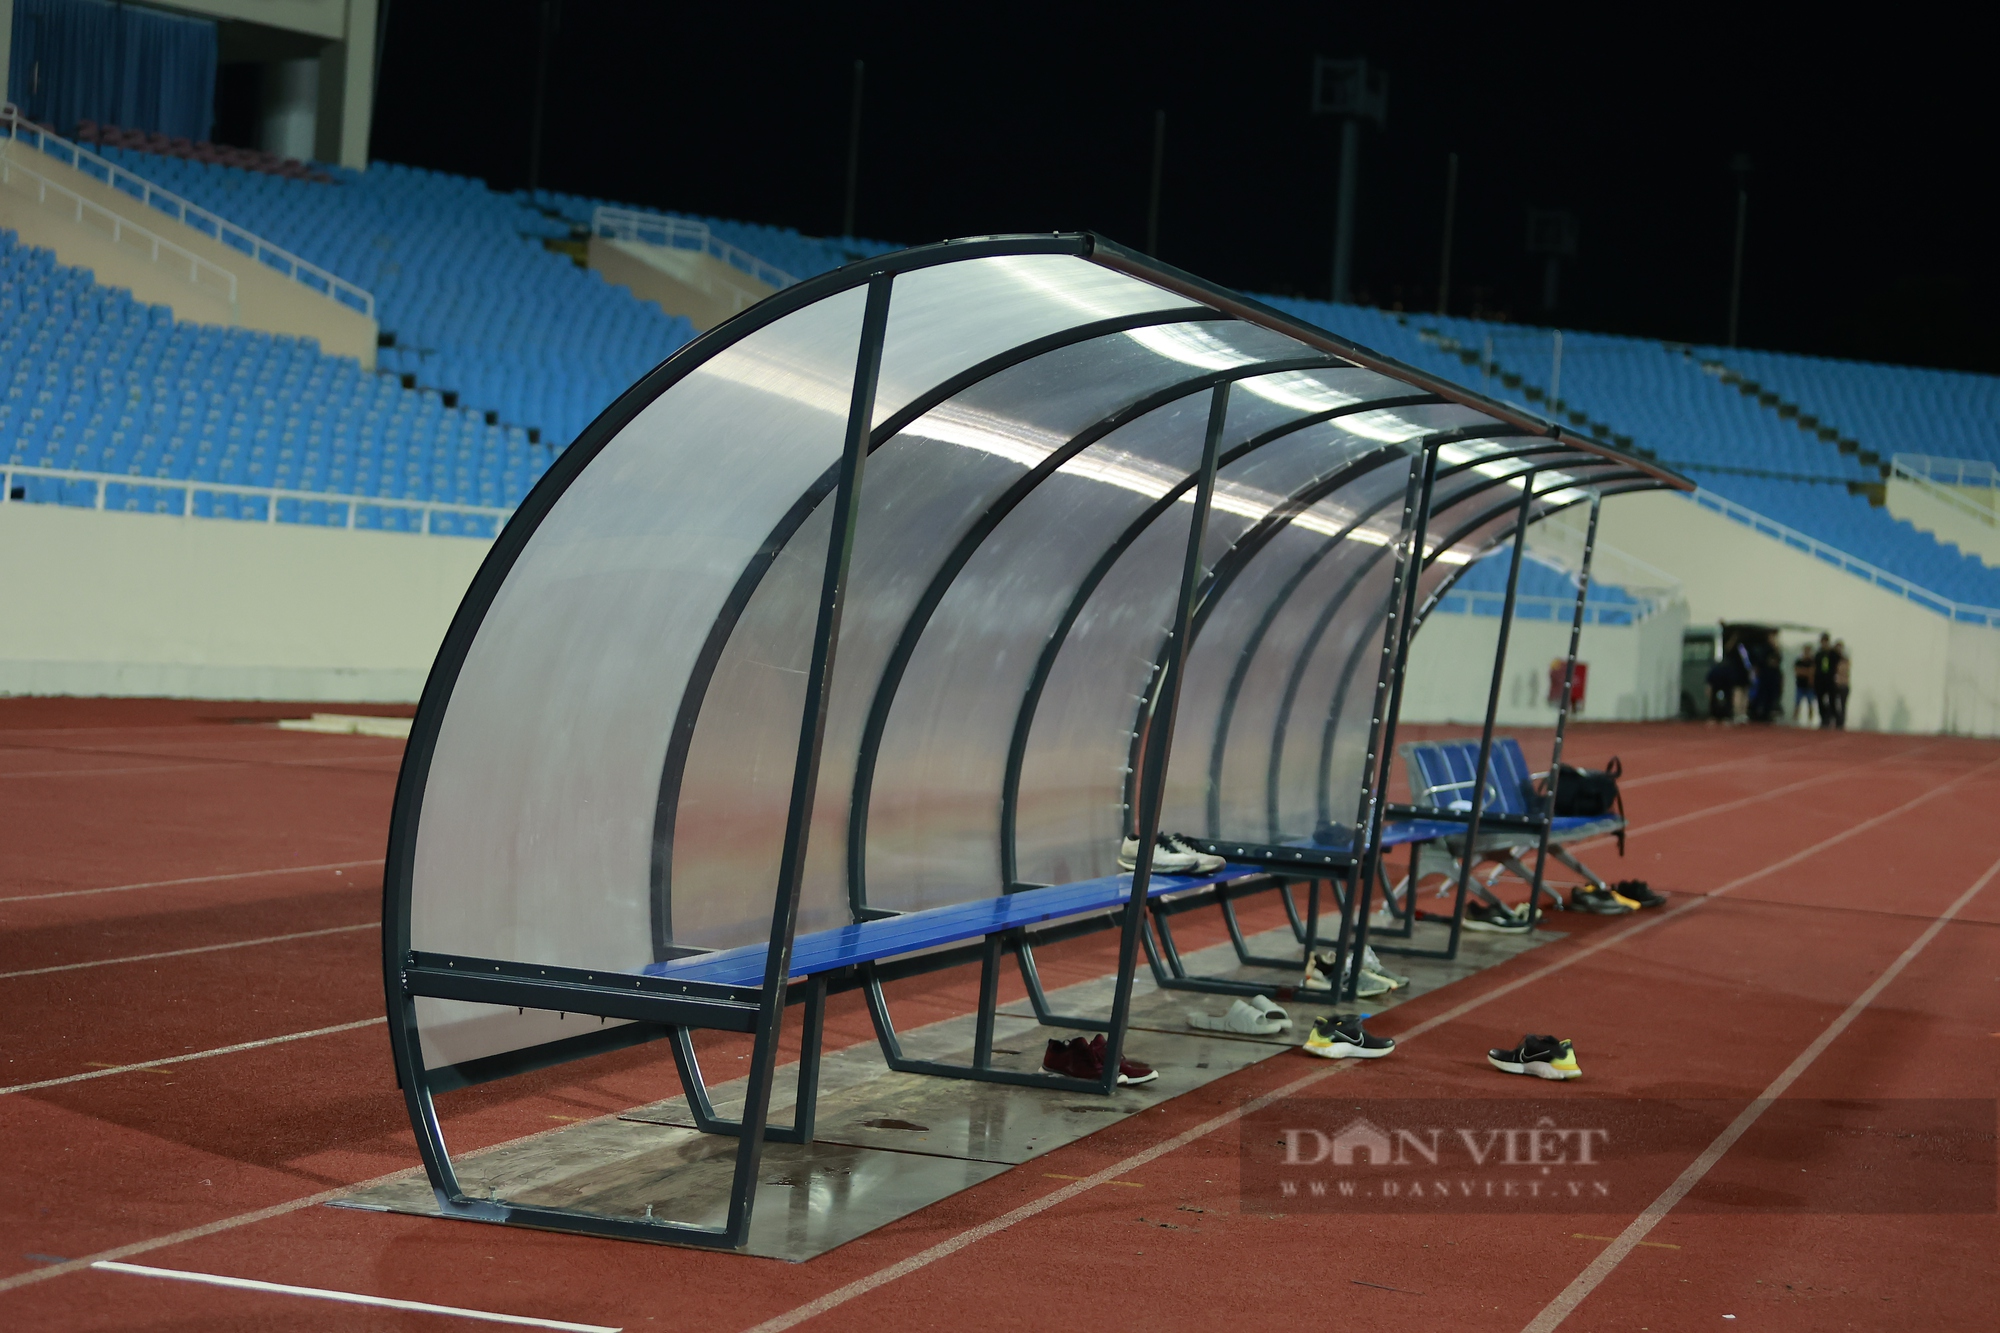 Cận cảnh cabin trên sân Mỹ Đình trước ngày đá AFC Champions League - Ảnh 4.